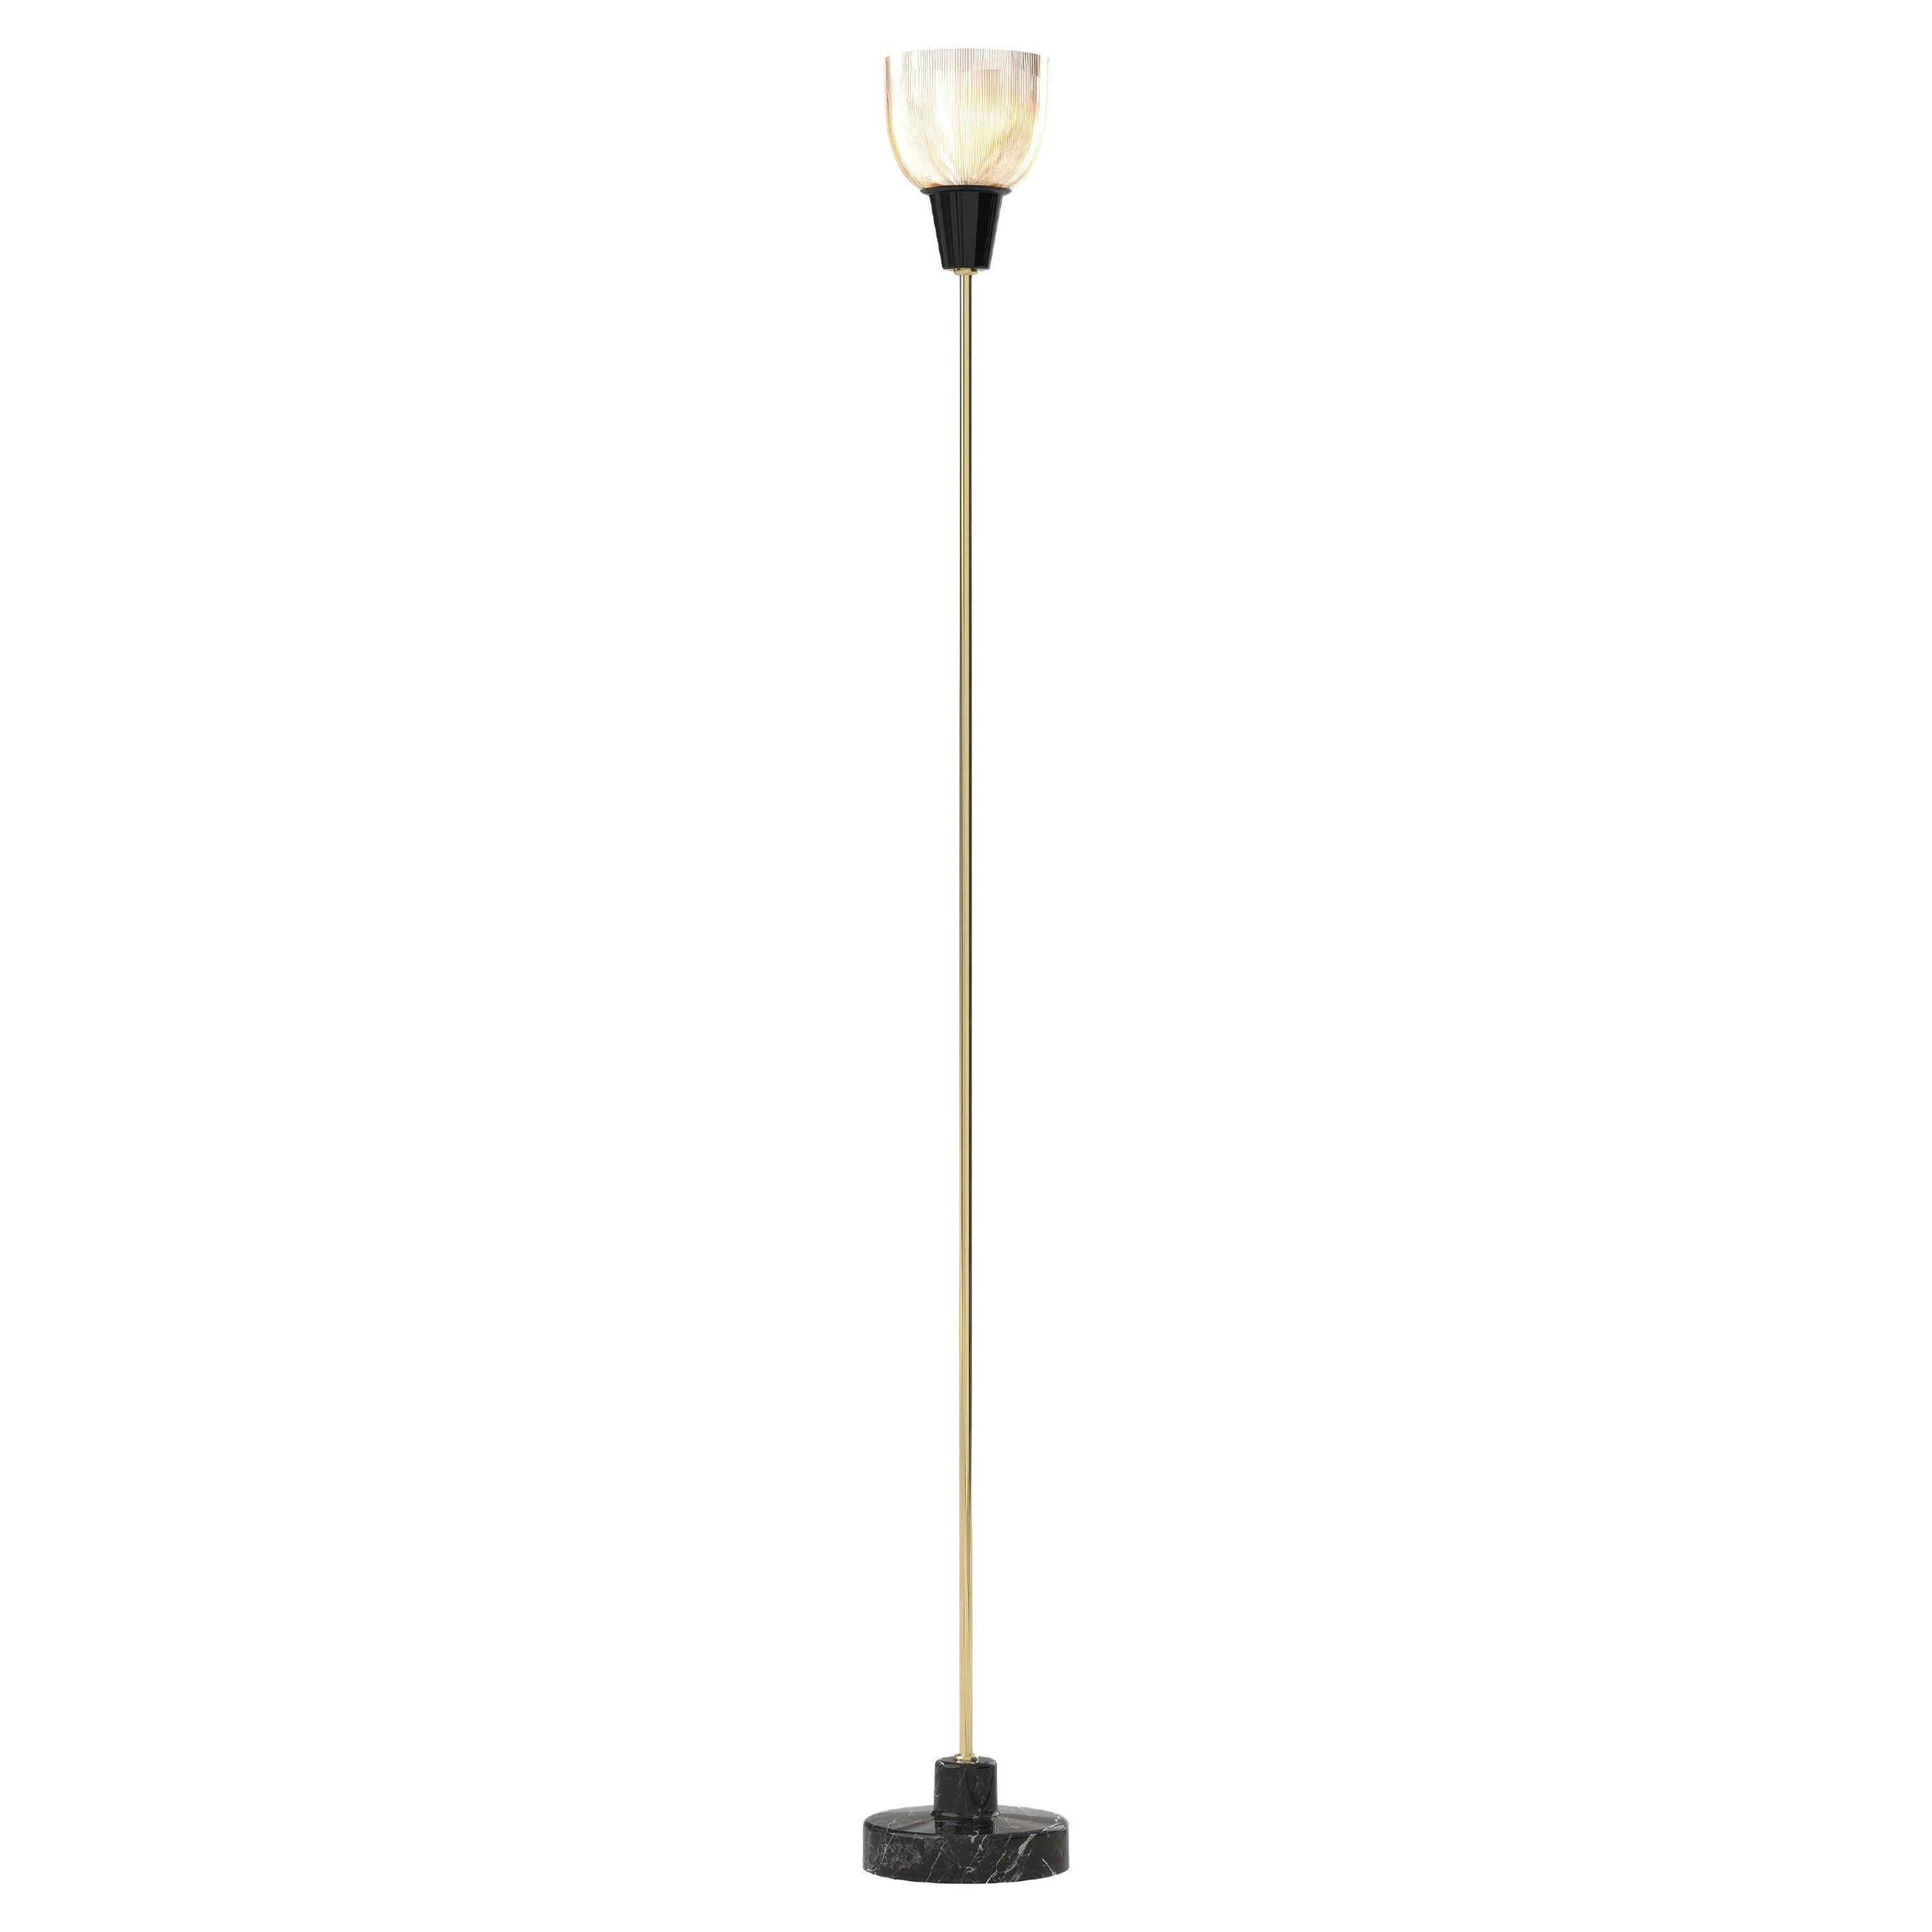 Ignazio Gardella 'Coppa Aperta Piantana' Floor Lamp in Black Marble and Brass For Sale